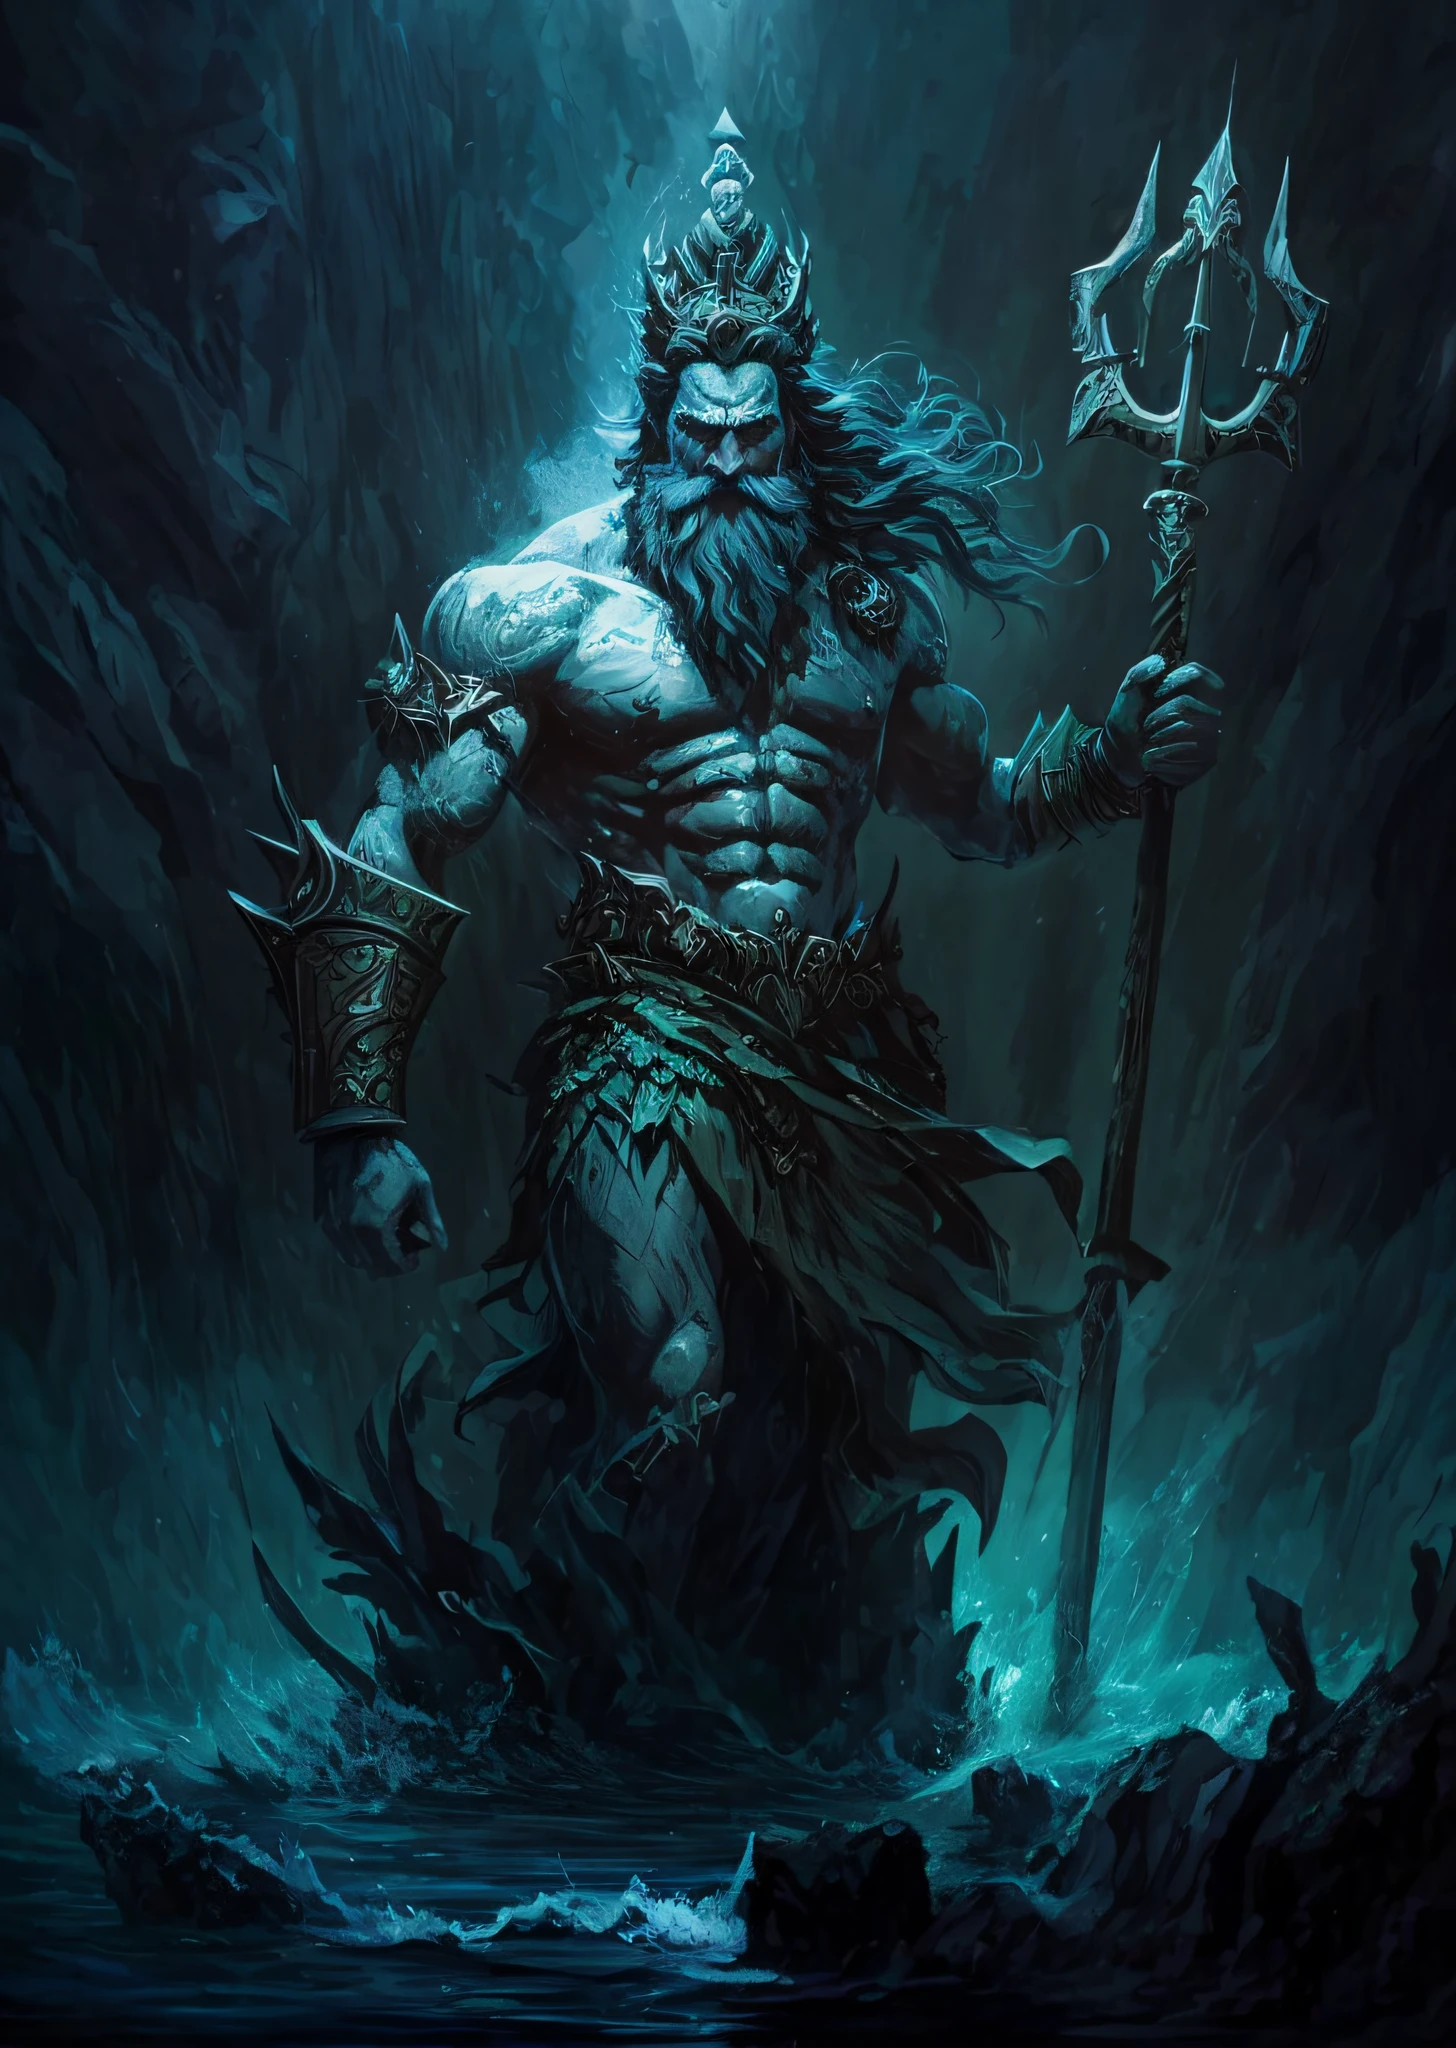 Una pintura de un hombre con una lanza y una gran masa de agua, O Deus Poseidón, El Dios del Mar, O Deus infierno, Poseidón, Caronte, o barqueiro de infierno, Dios del océano, Dios del inframundo, infierno, Deus Shiva o Destruidor, Dios enojado Zeus, Como um atlante